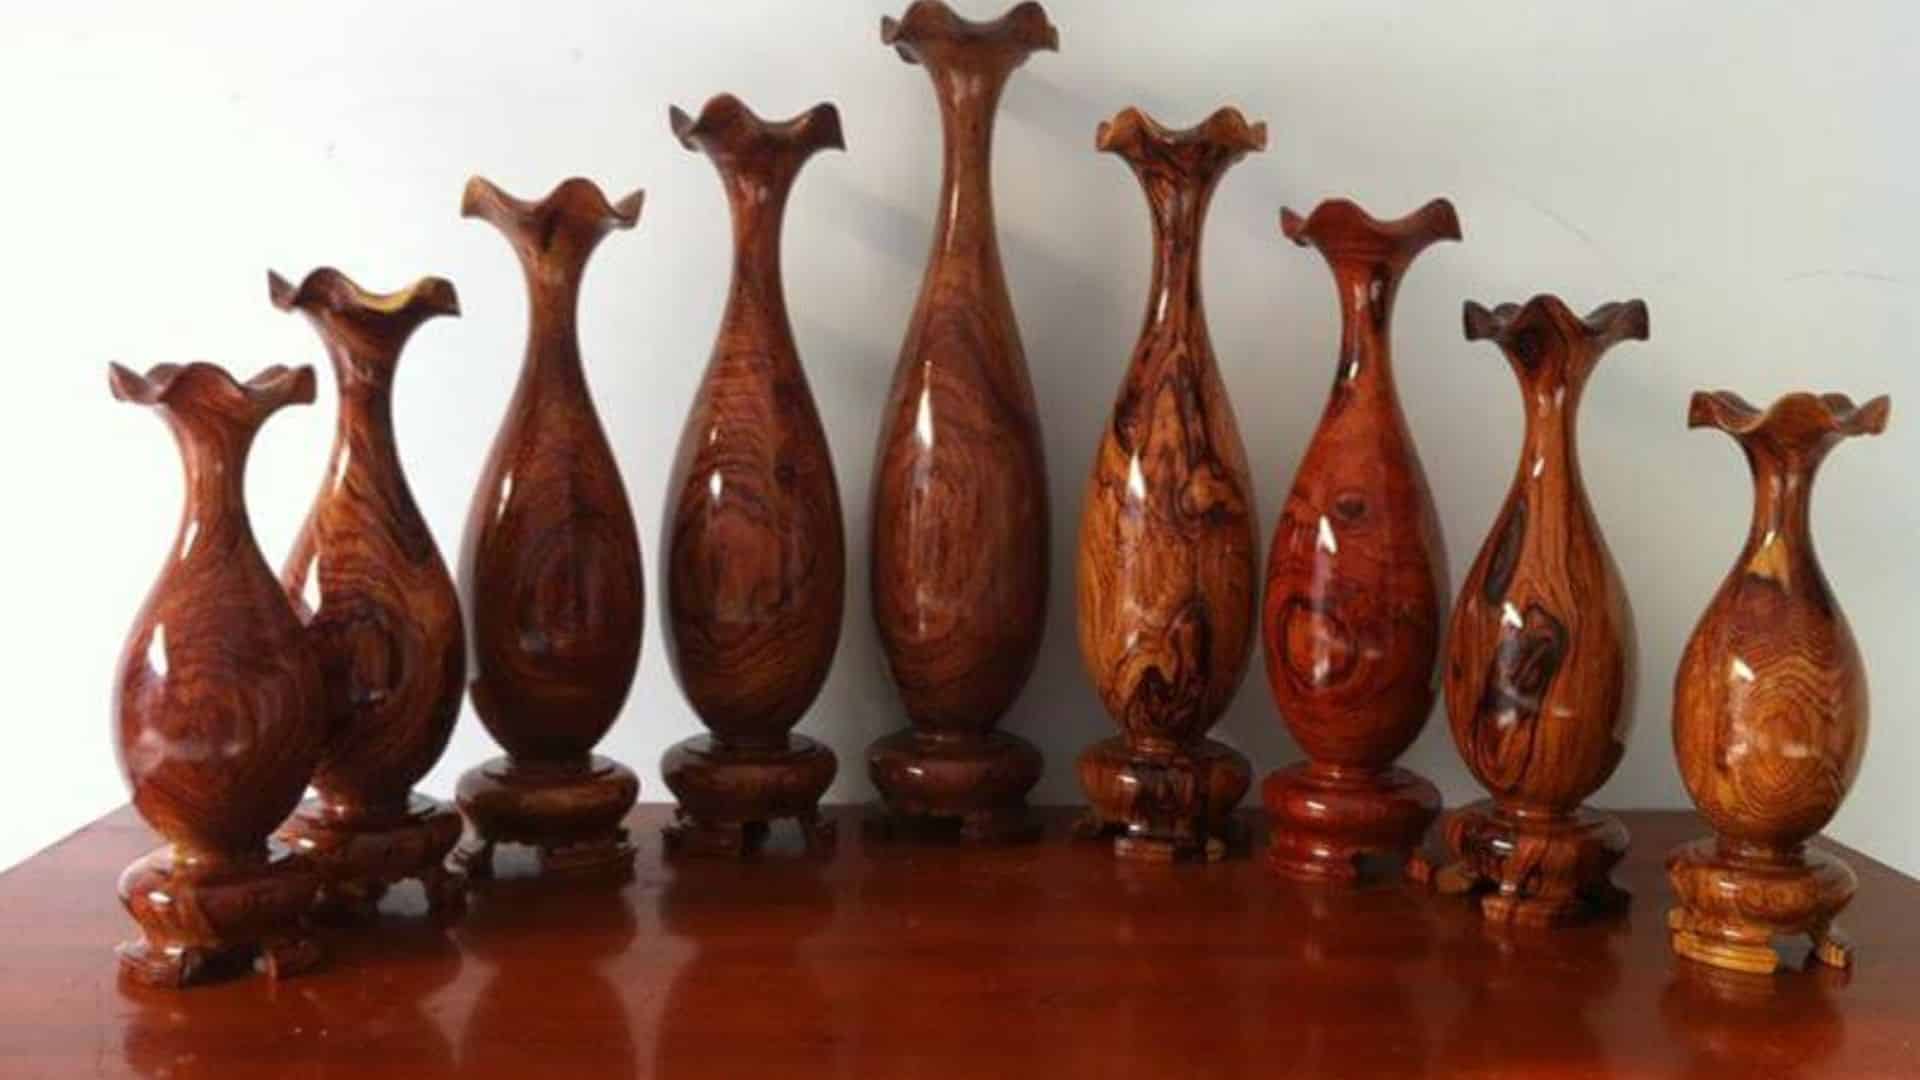 Nam Phương - Salon đồ gỗ Đà Nẵng 